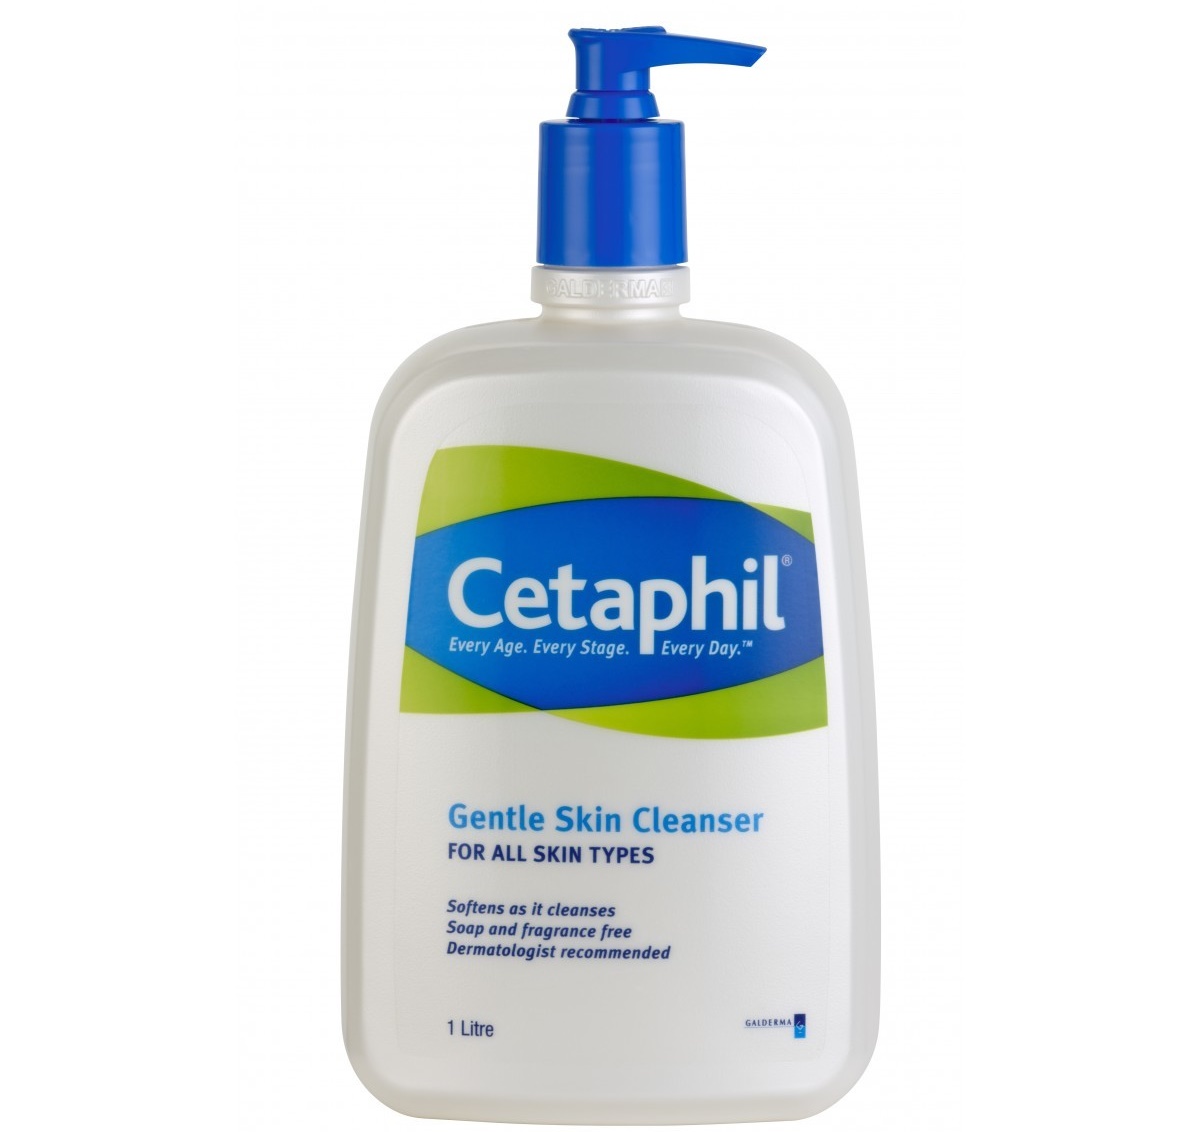 cetaphil-gentle-skin-cleanser-1-litre-4029-5145813-1